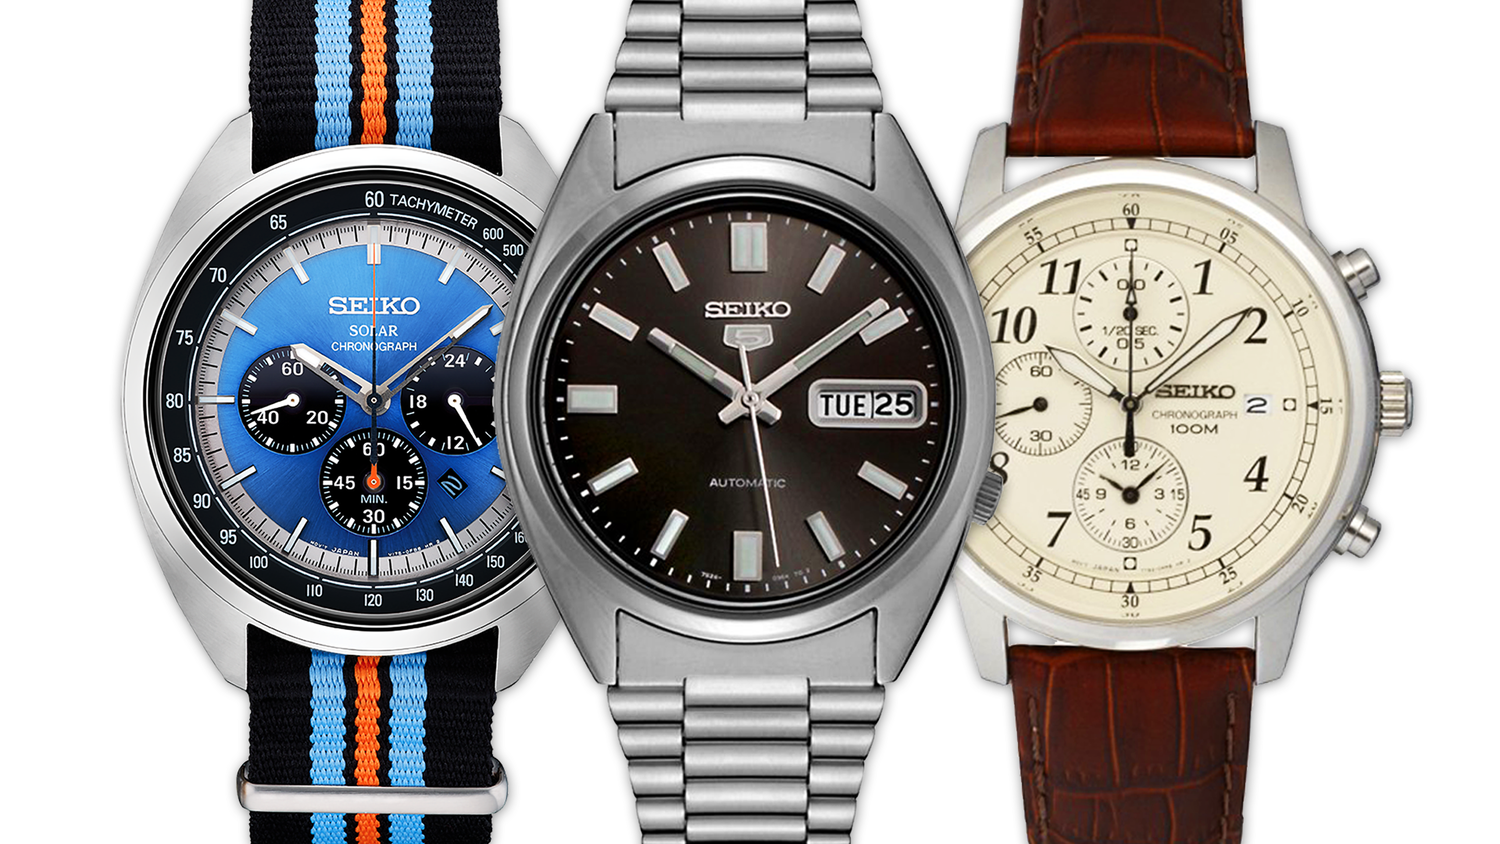 punktum nikotin stun Best Seiko Watches Under 200 Dollars (That Look Expensive) — Ben's Watch  Club